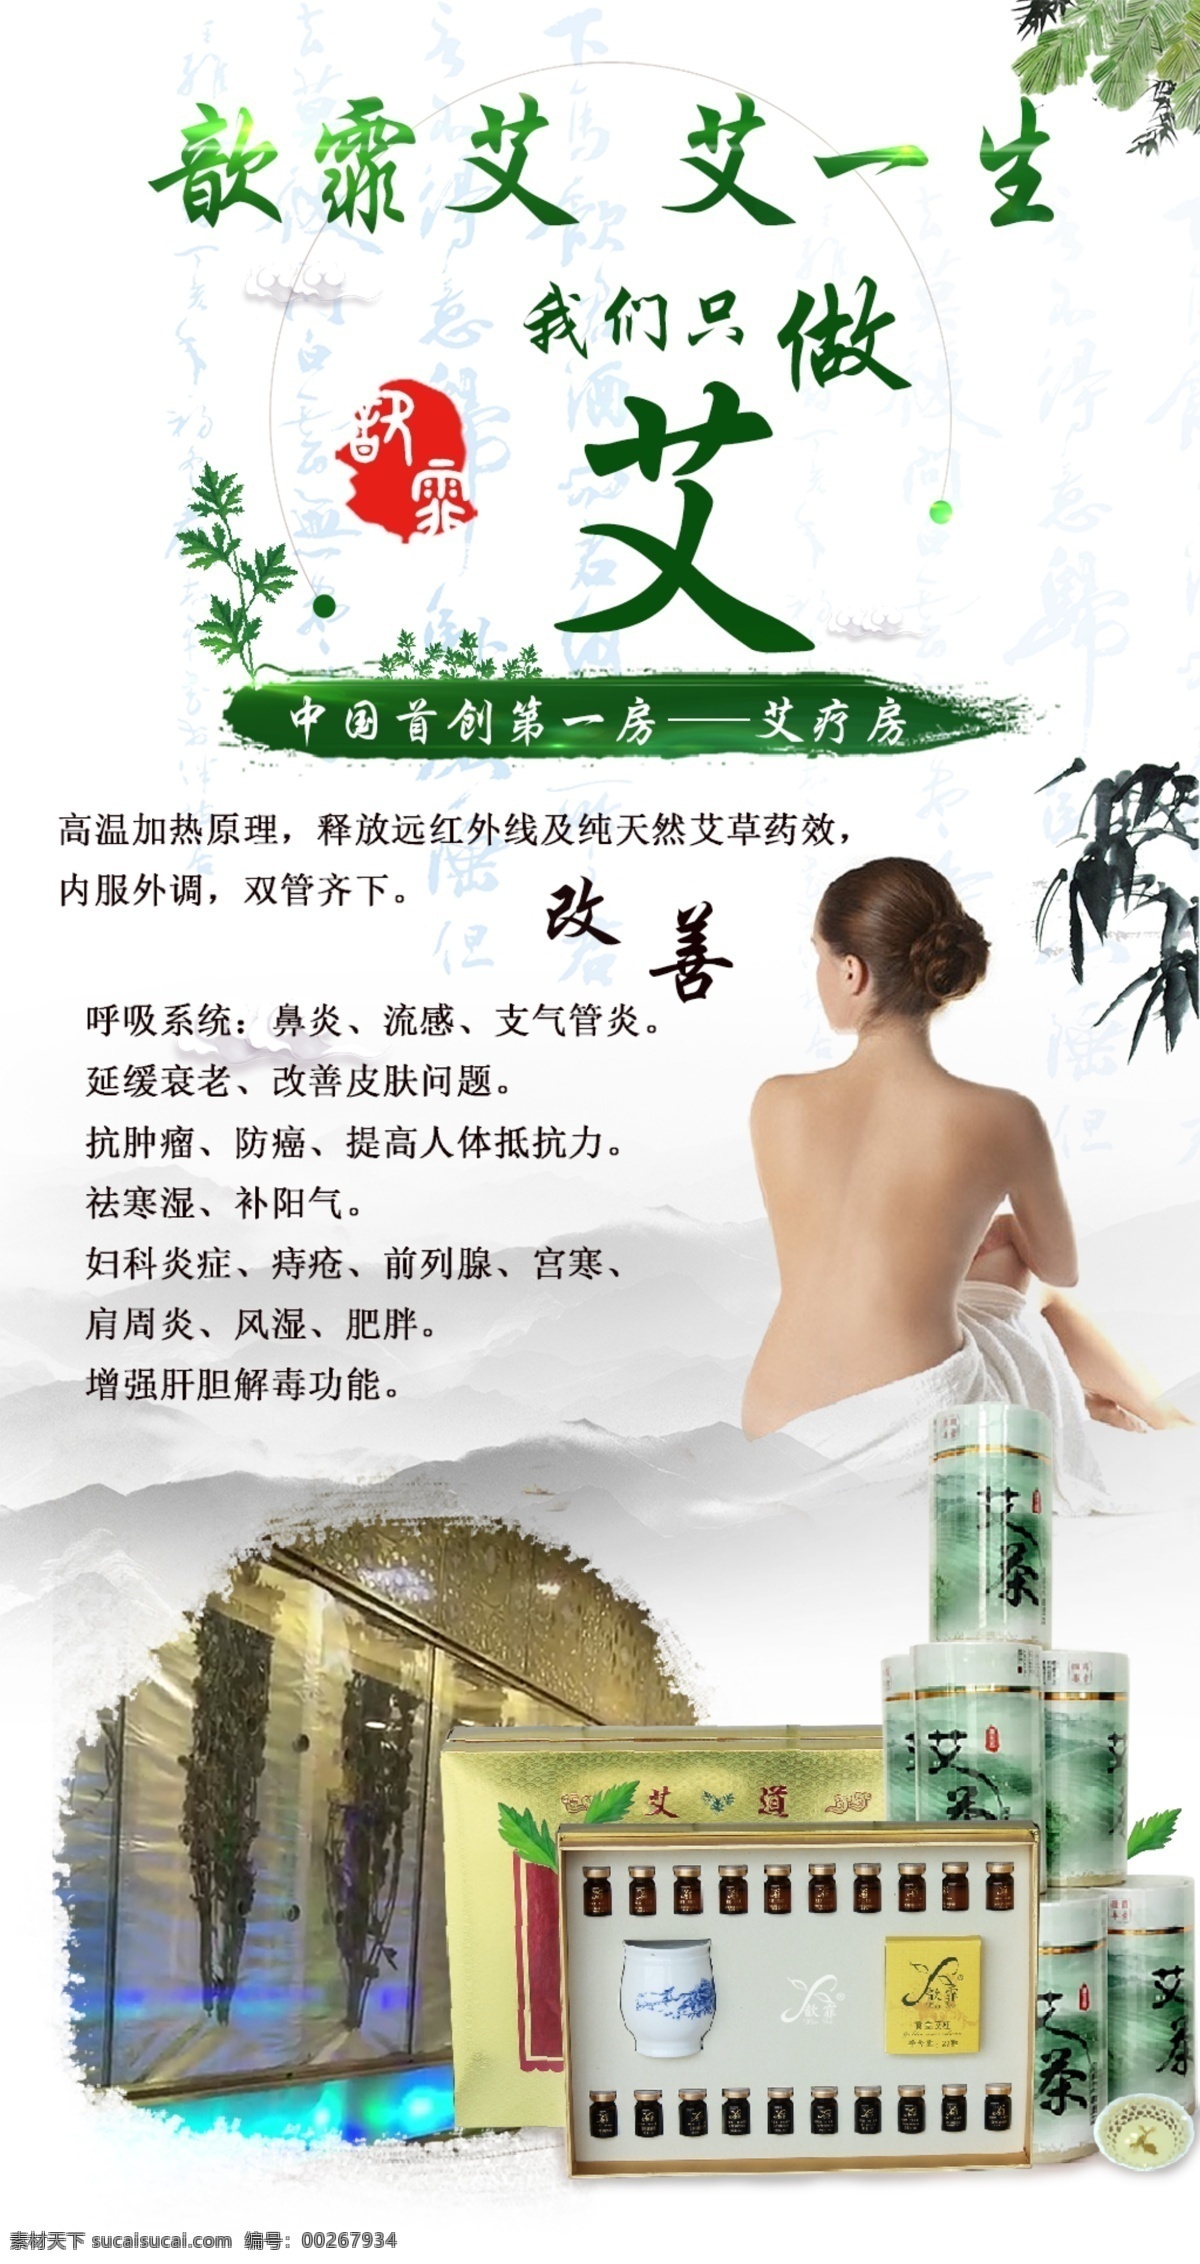 艾 疗 房 养生 产品 宣传海报 汗蒸房 艾疗房 养生海报 中国风 水墨 宣传 促销